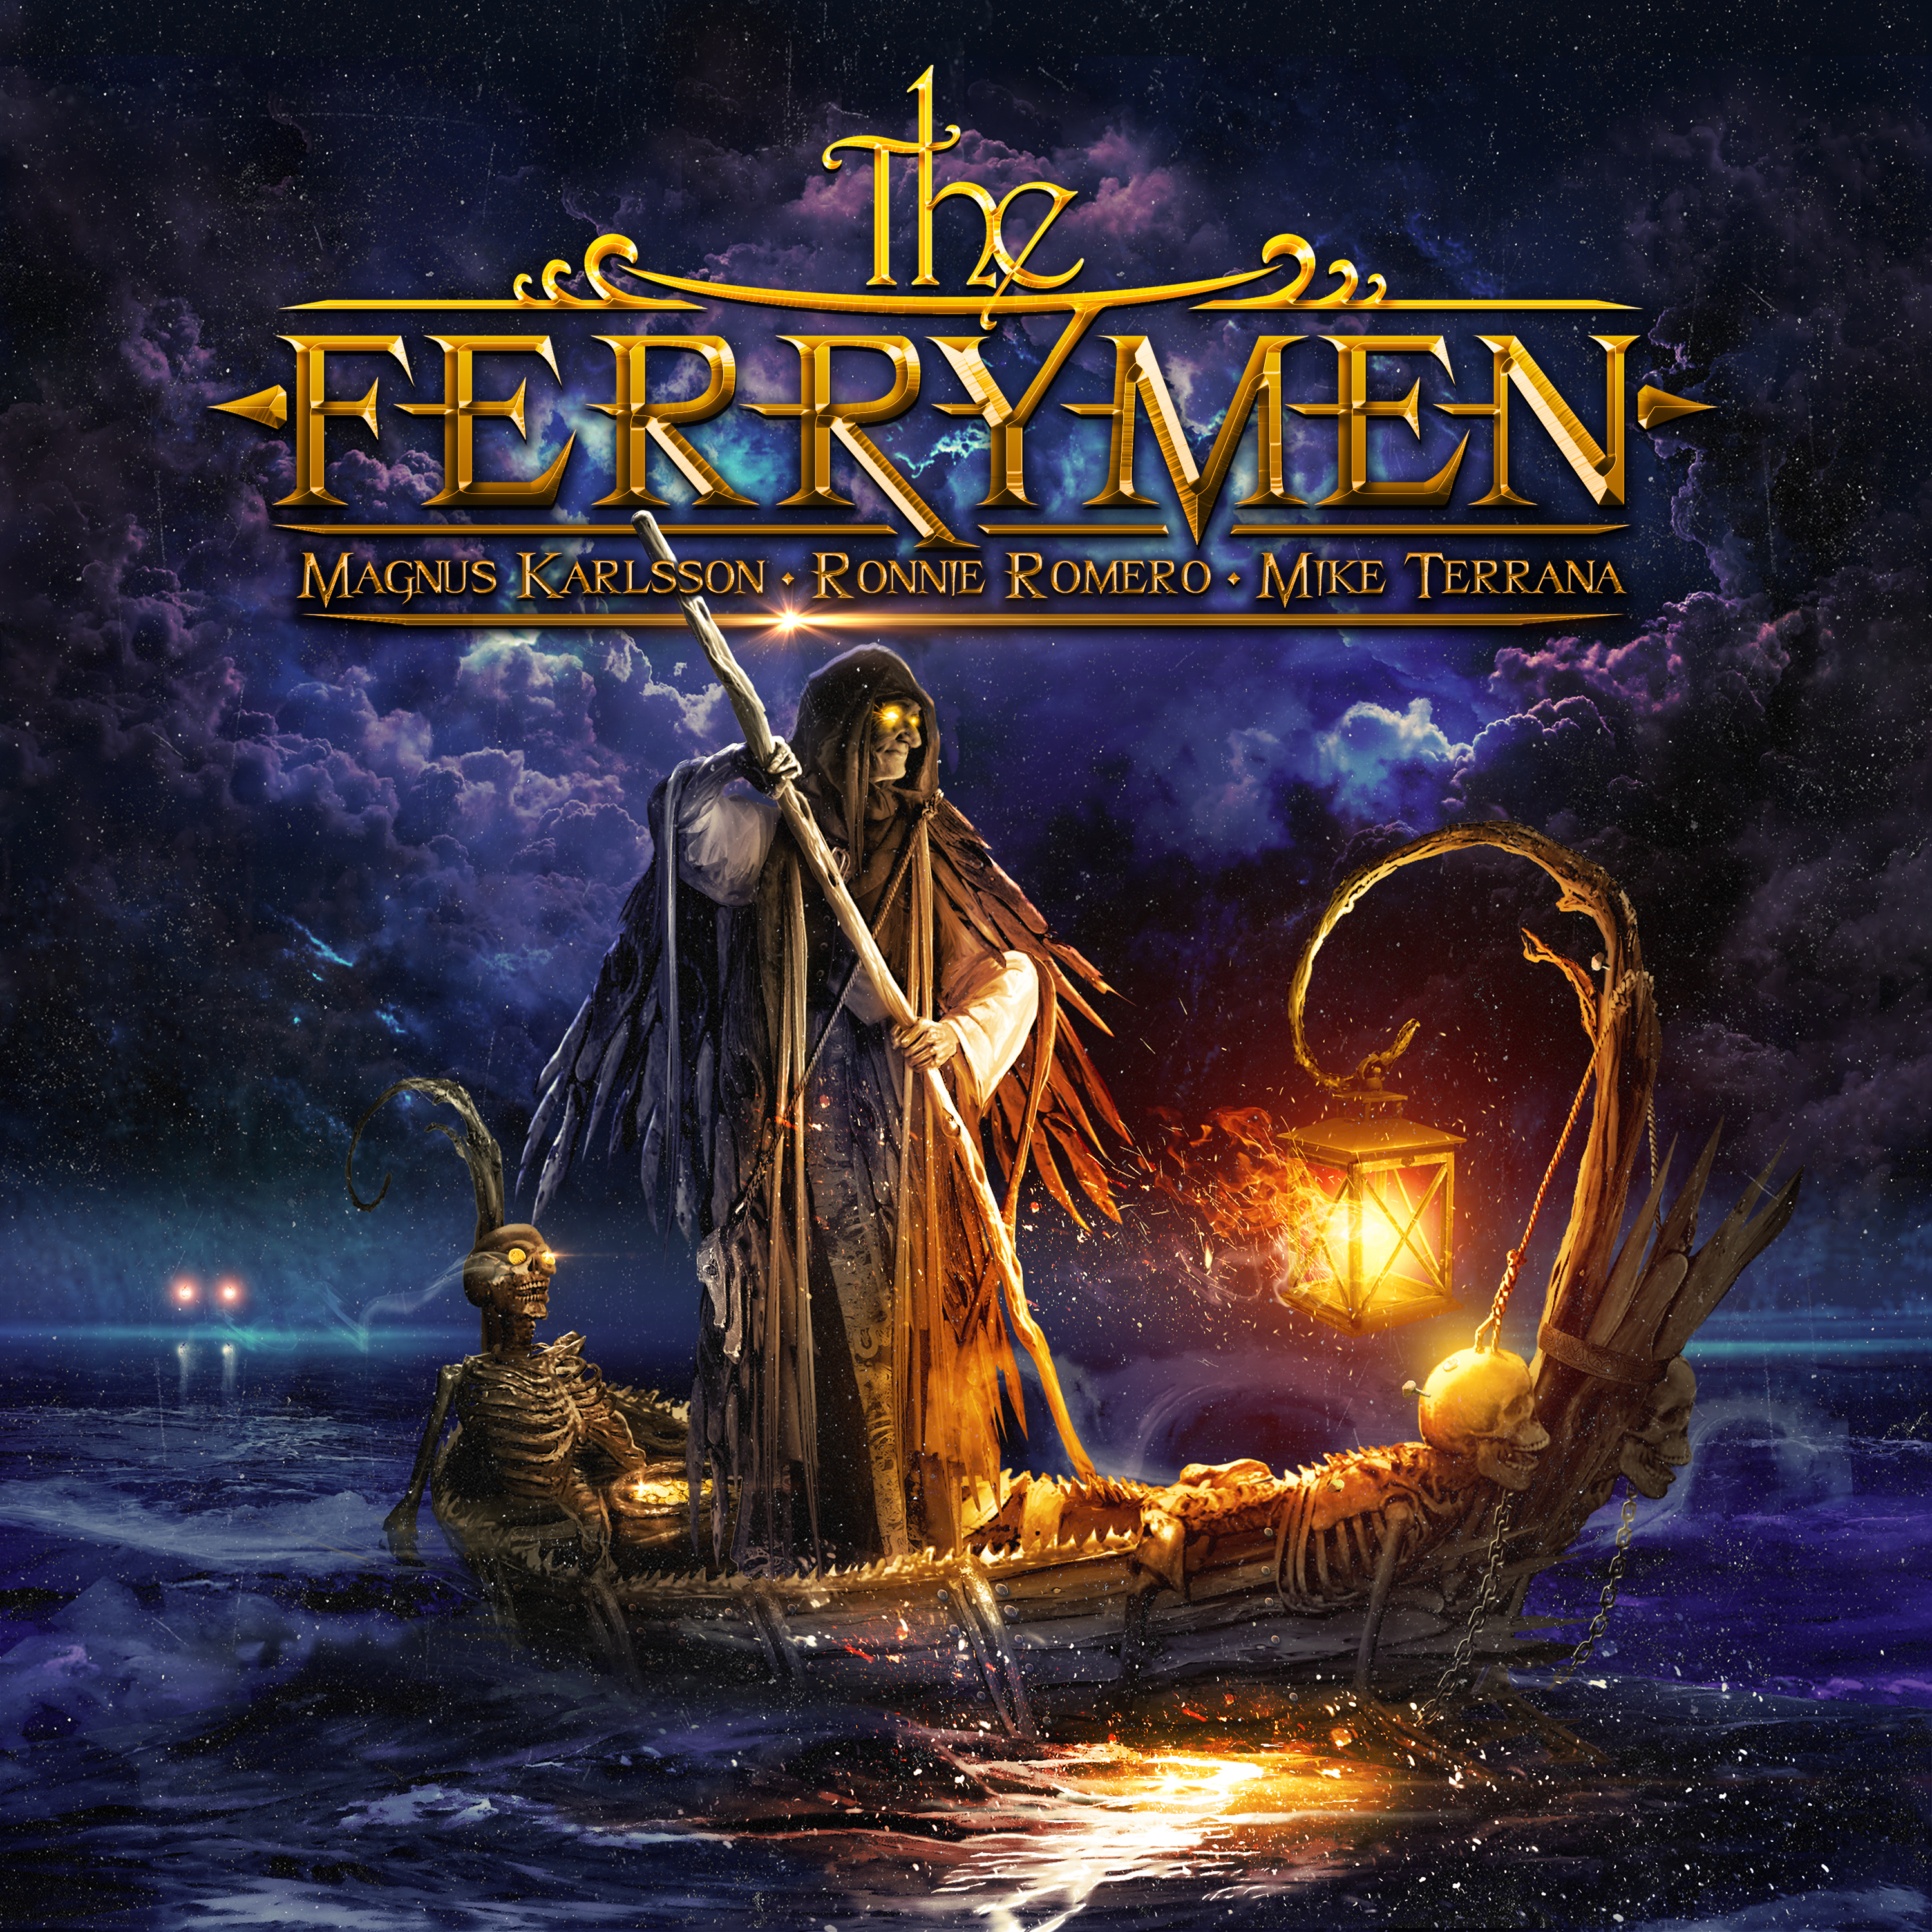 The Ferrymen – The Ferrymen